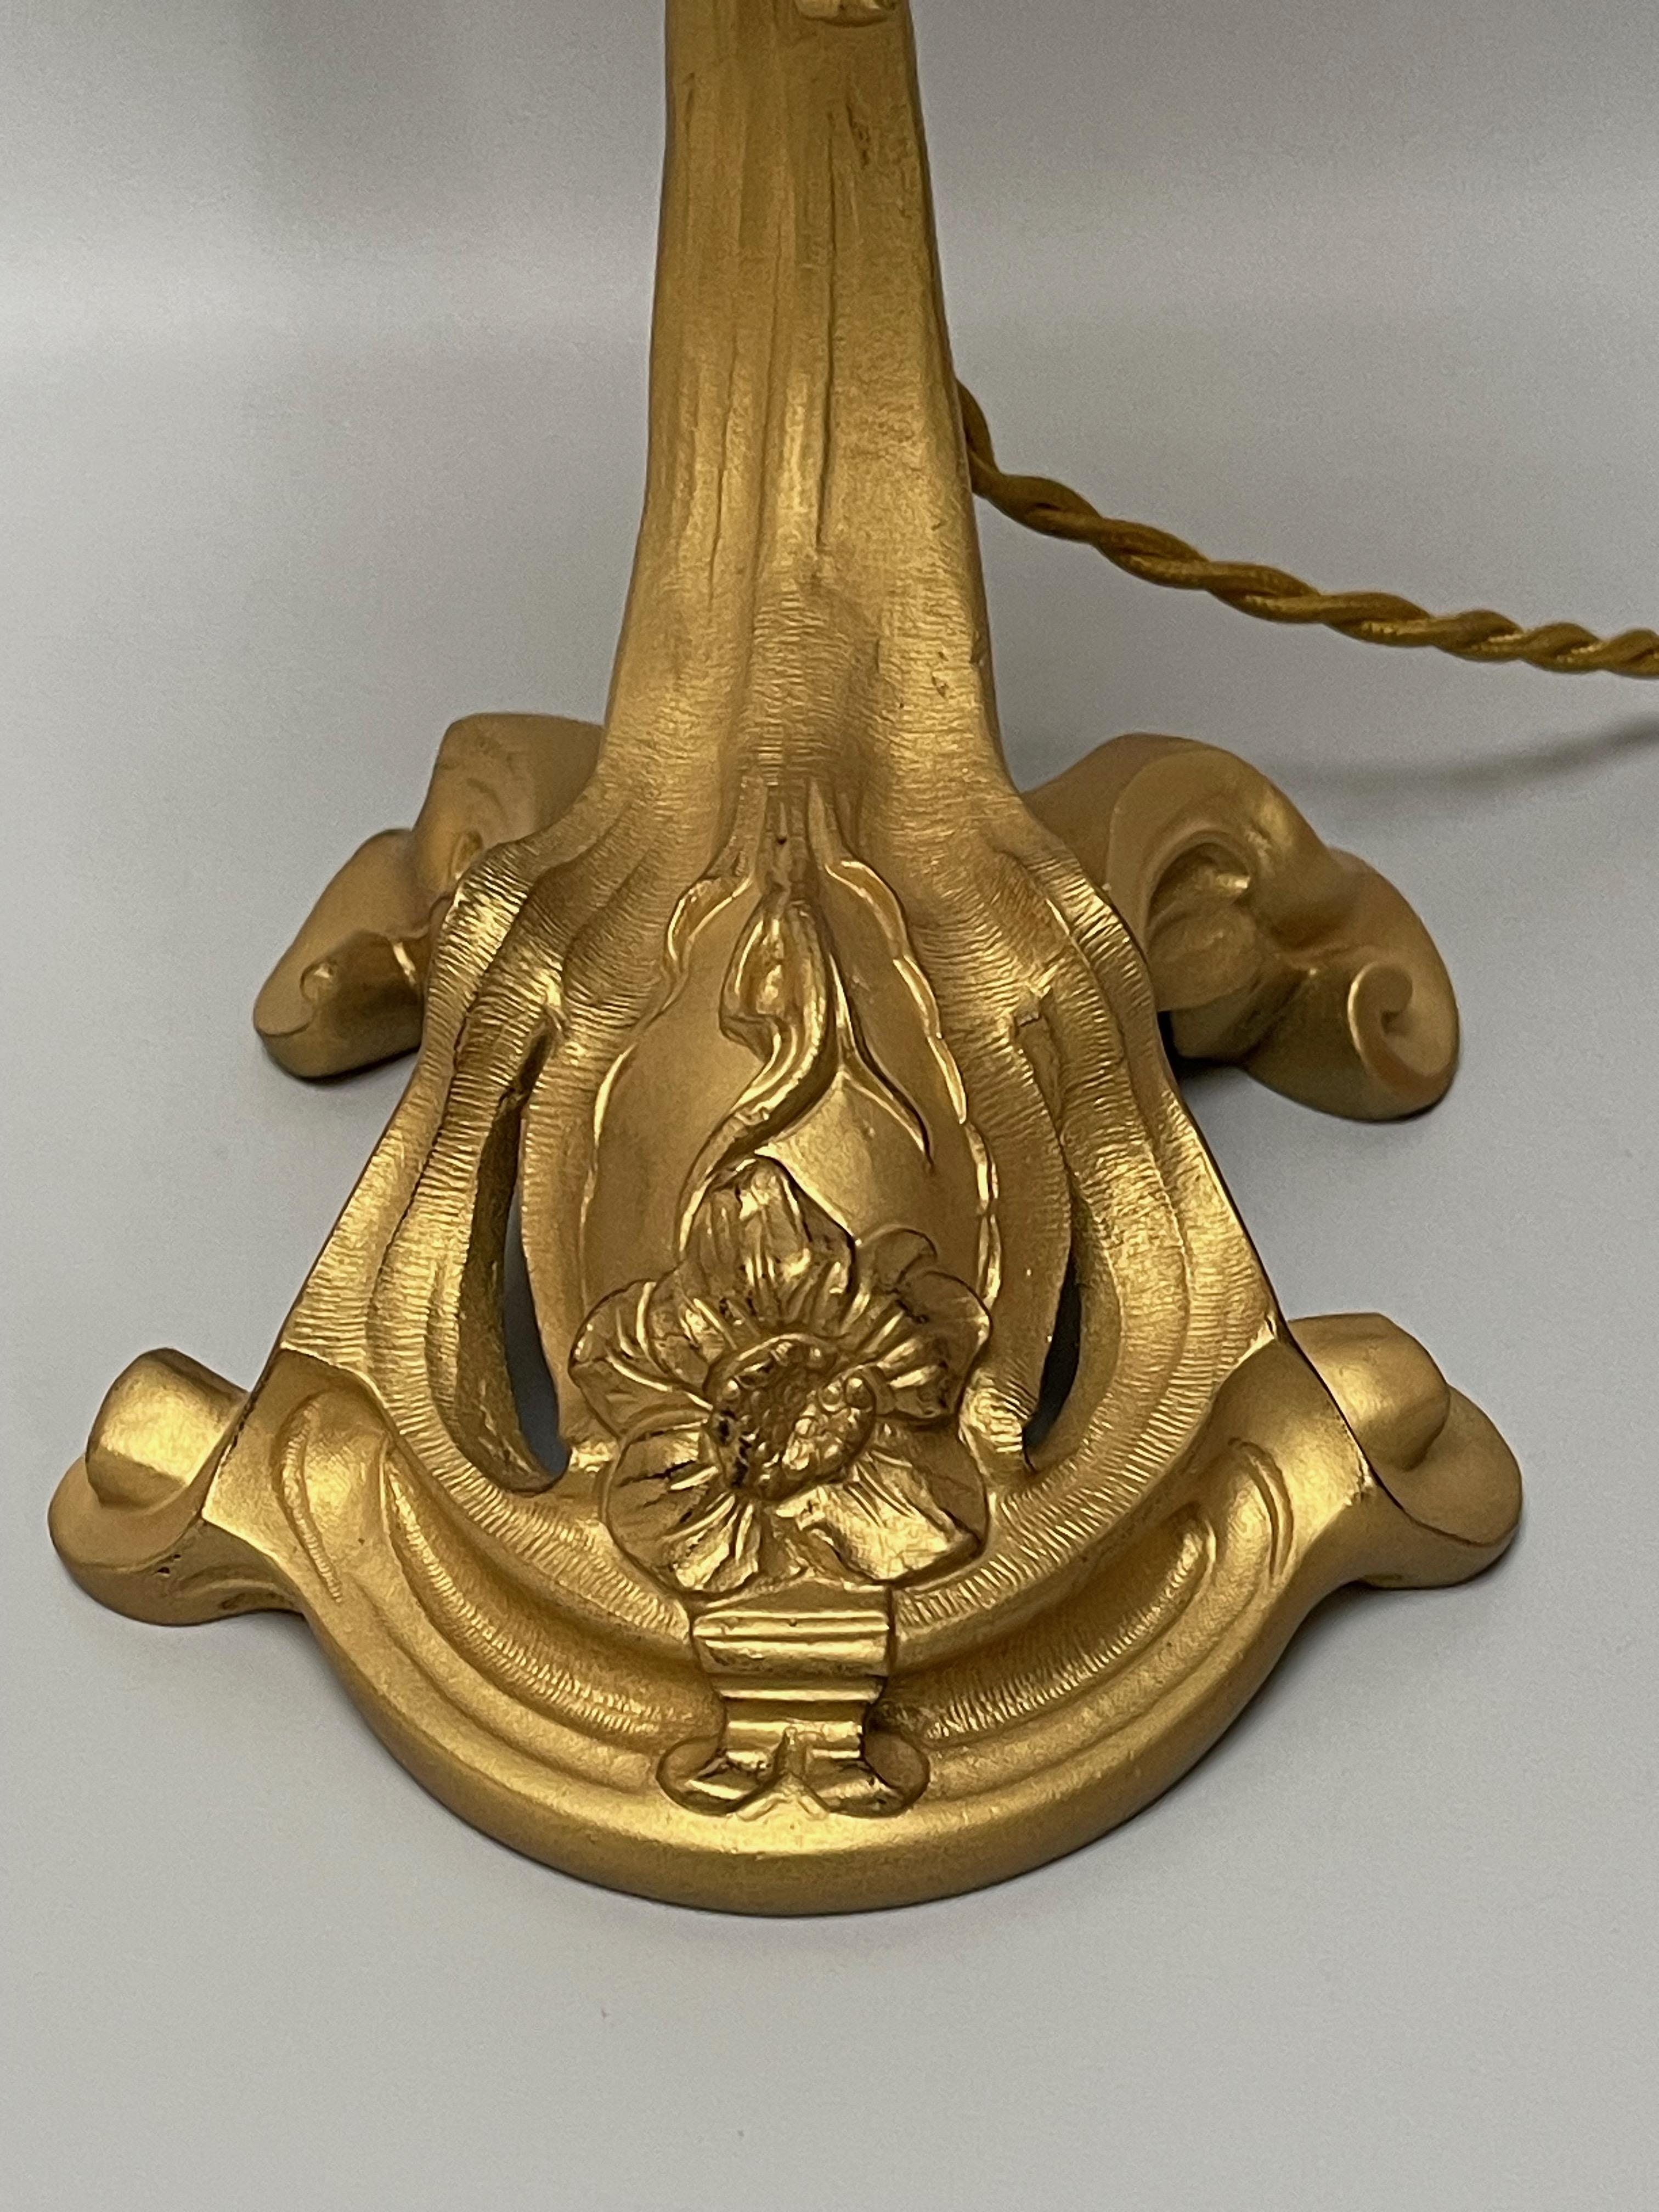 Vergoldete Bronzelampe um 1900, wahrscheinlich von Majorelle, ausgeführt von Victor Saglier. Auf den Fuß gestempelt VS.
Glaspaste Tulpe signiert Daum Nancy.
Lampe elektrifiziert und in perfektem Zustand.

Gesamthöhe: 38,5 cm - 15,15 in
Breite: